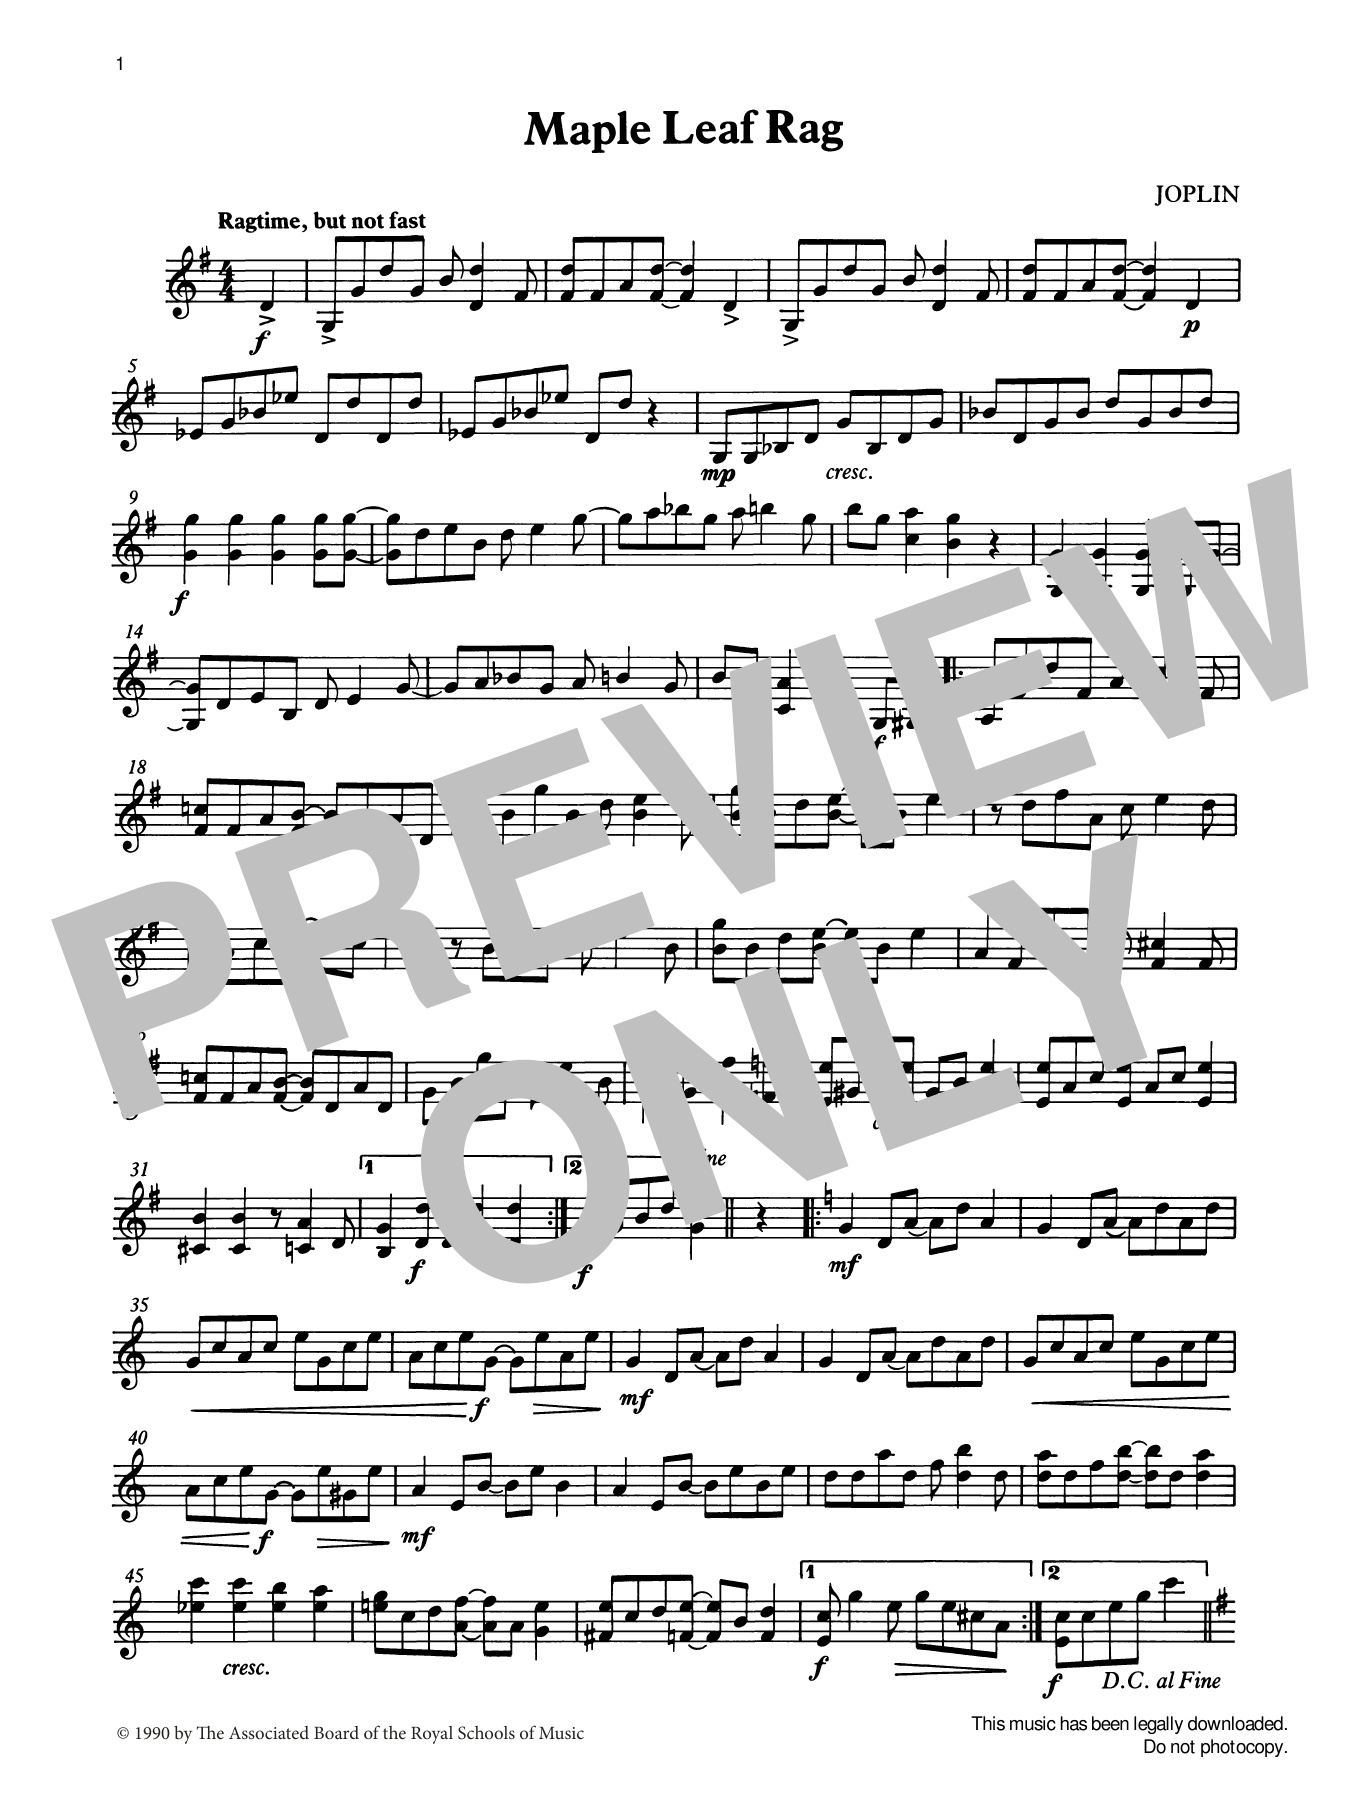 Download Scott Joplin Maple Leaf Rag (score & part) from Grad Sheet Music